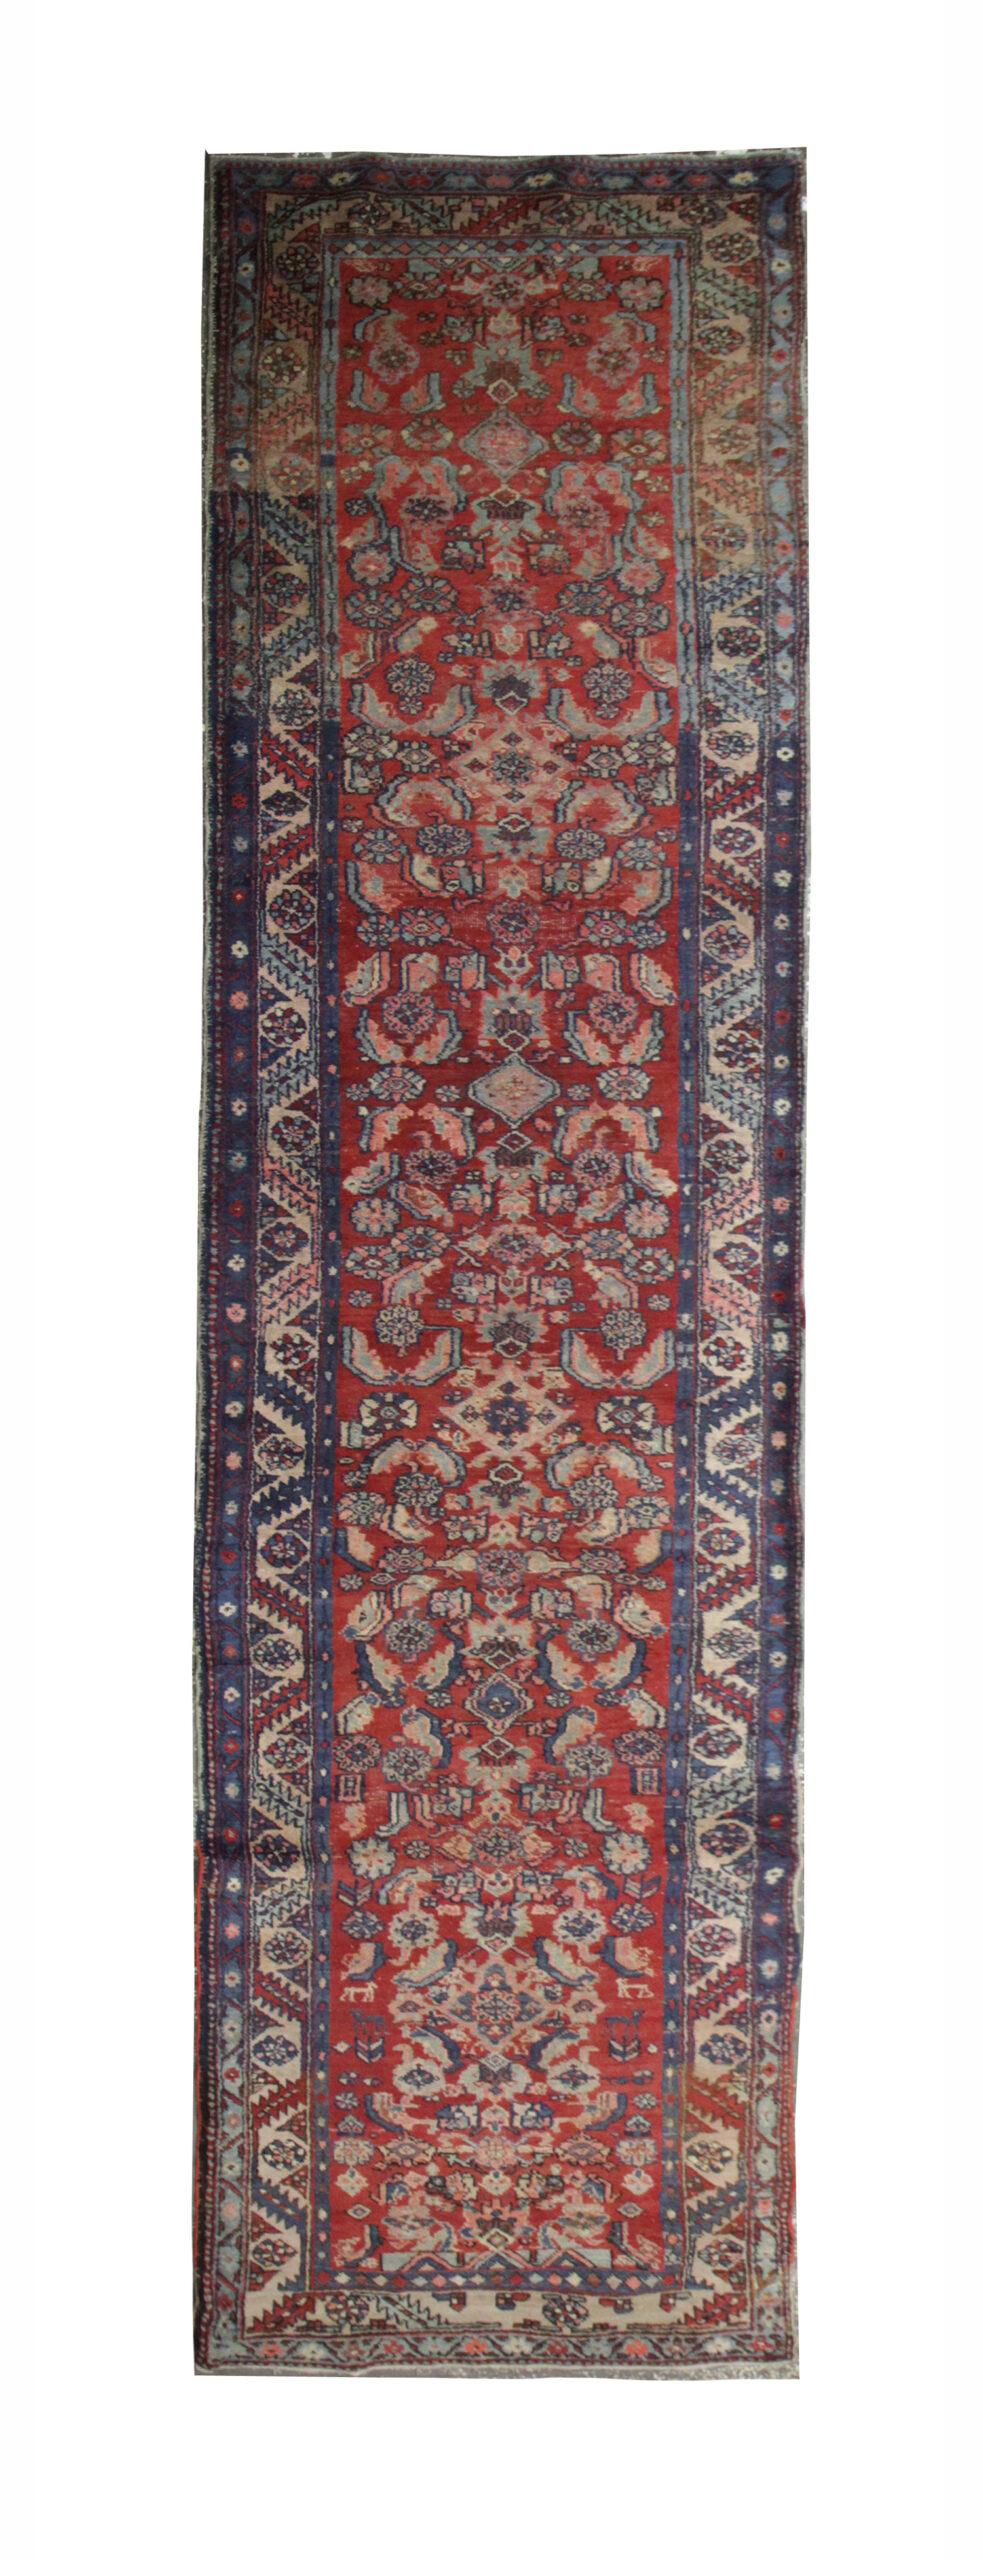 Handgefertigter Vintage-Teppich Harati-Muster roter Stair-Läufer CHR68, Vintage